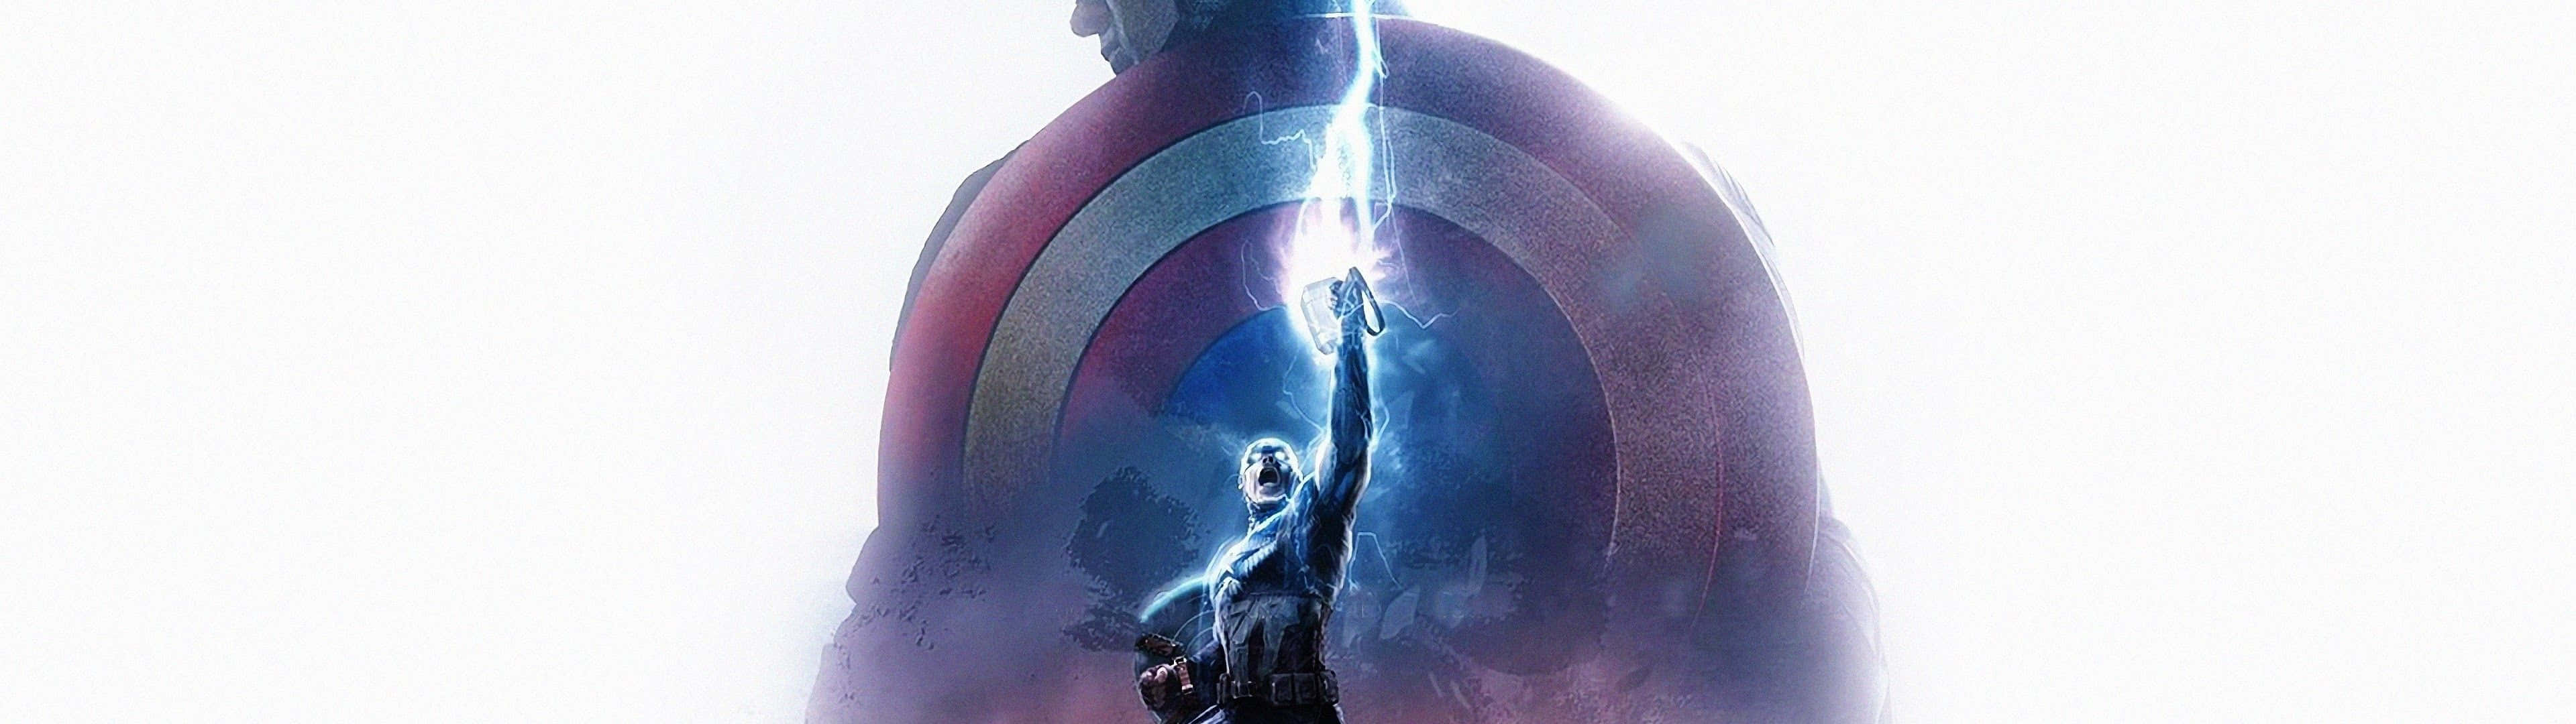 Seiensie Zum 4. Juli Patriotisch Und Lassen Sie Sich Von Dem Captain America Dual Screen Wallpaper Inspirieren! Wallpaper